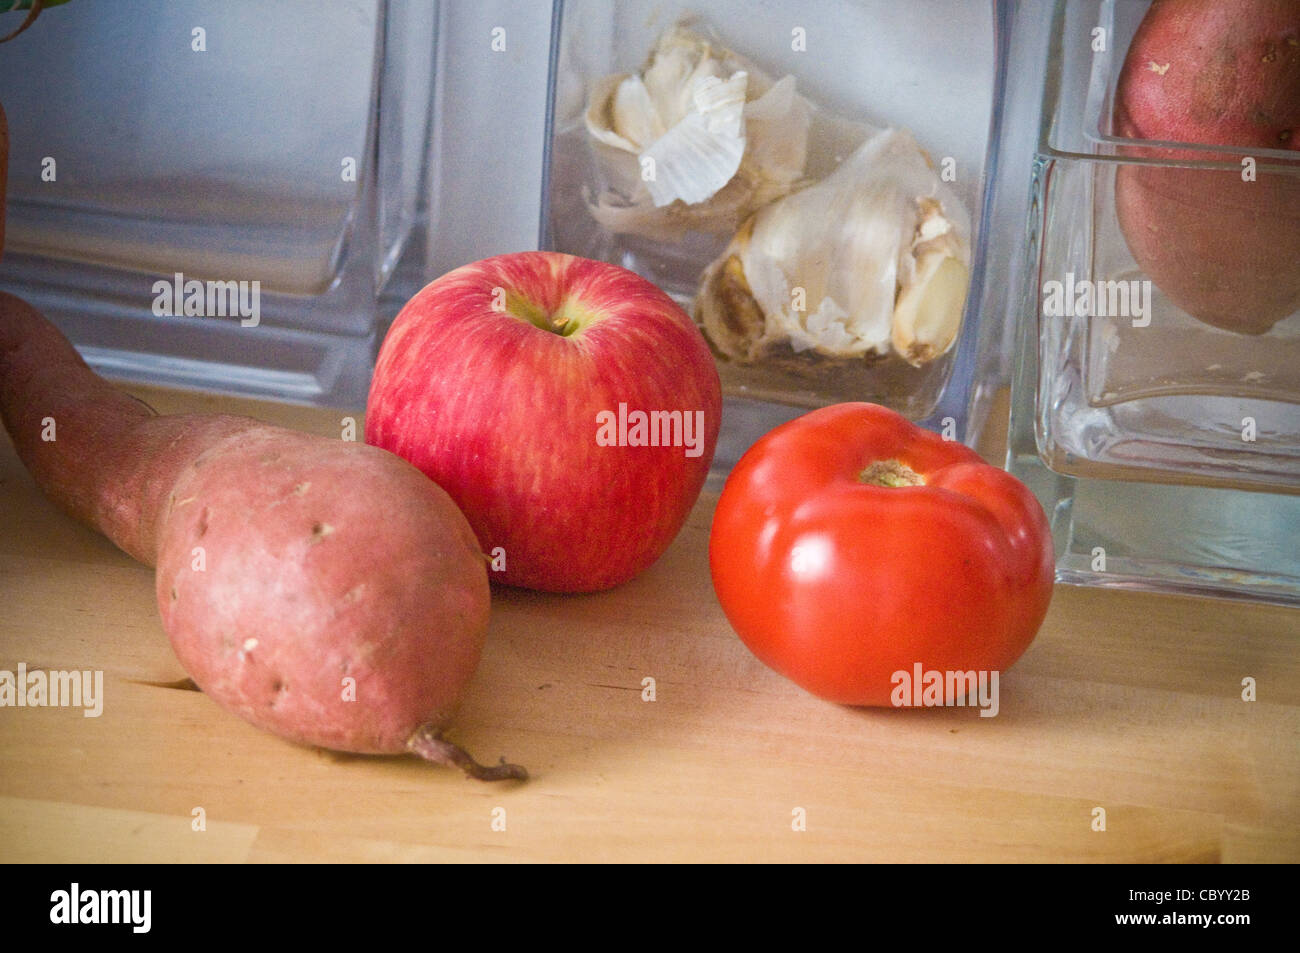 Kitchen counter, fresh, fruit, vegetable, sweet potato, tomato, peach. Stock Photo